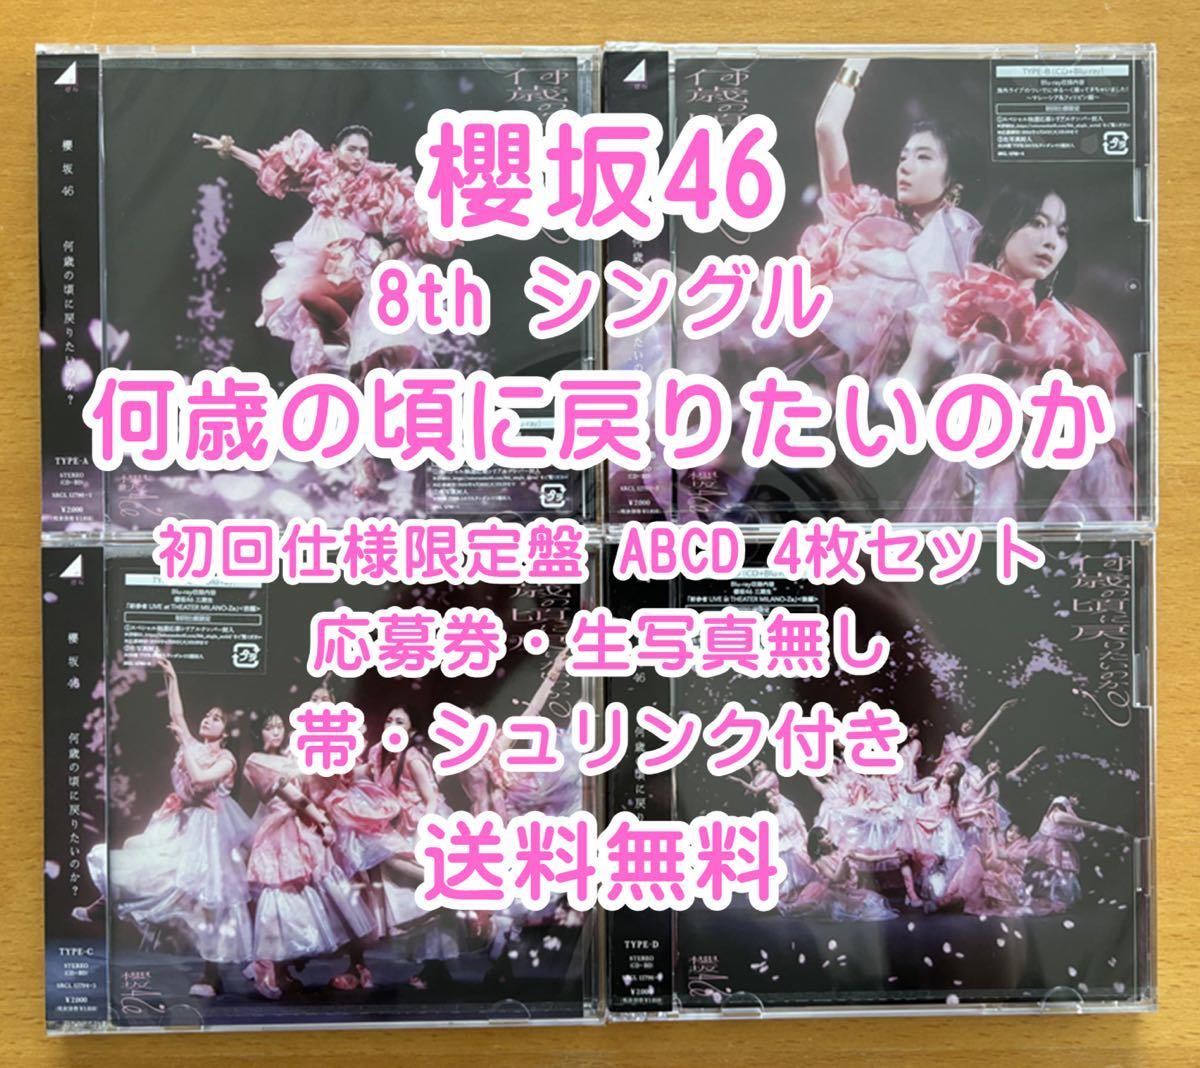 ◆ 櫻坂46 8th 何歳の頃に戻りたいのか 初回限定仕様 CD+Blu-ray ABCD 4枚セット 未再生 特典関係無し ◆ 残りわずか